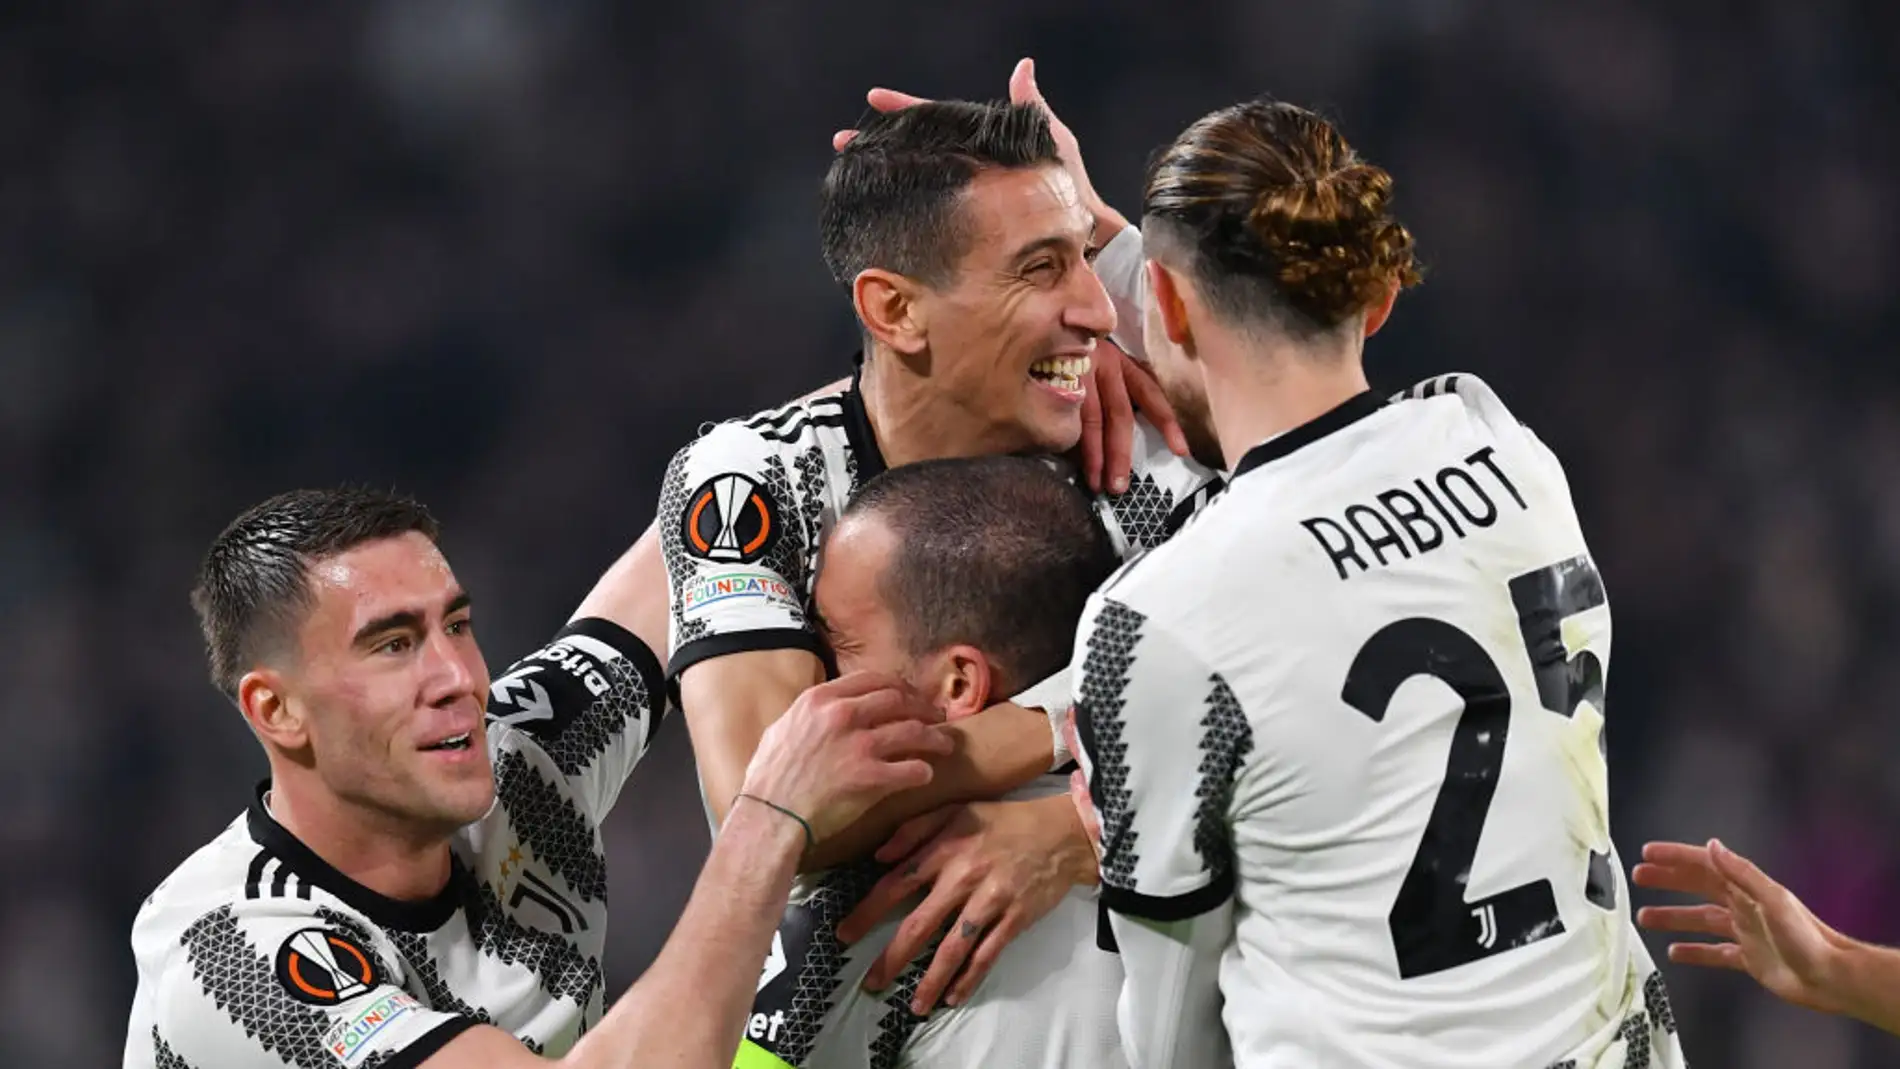 Los jugadores de la Juventus celebran un gol